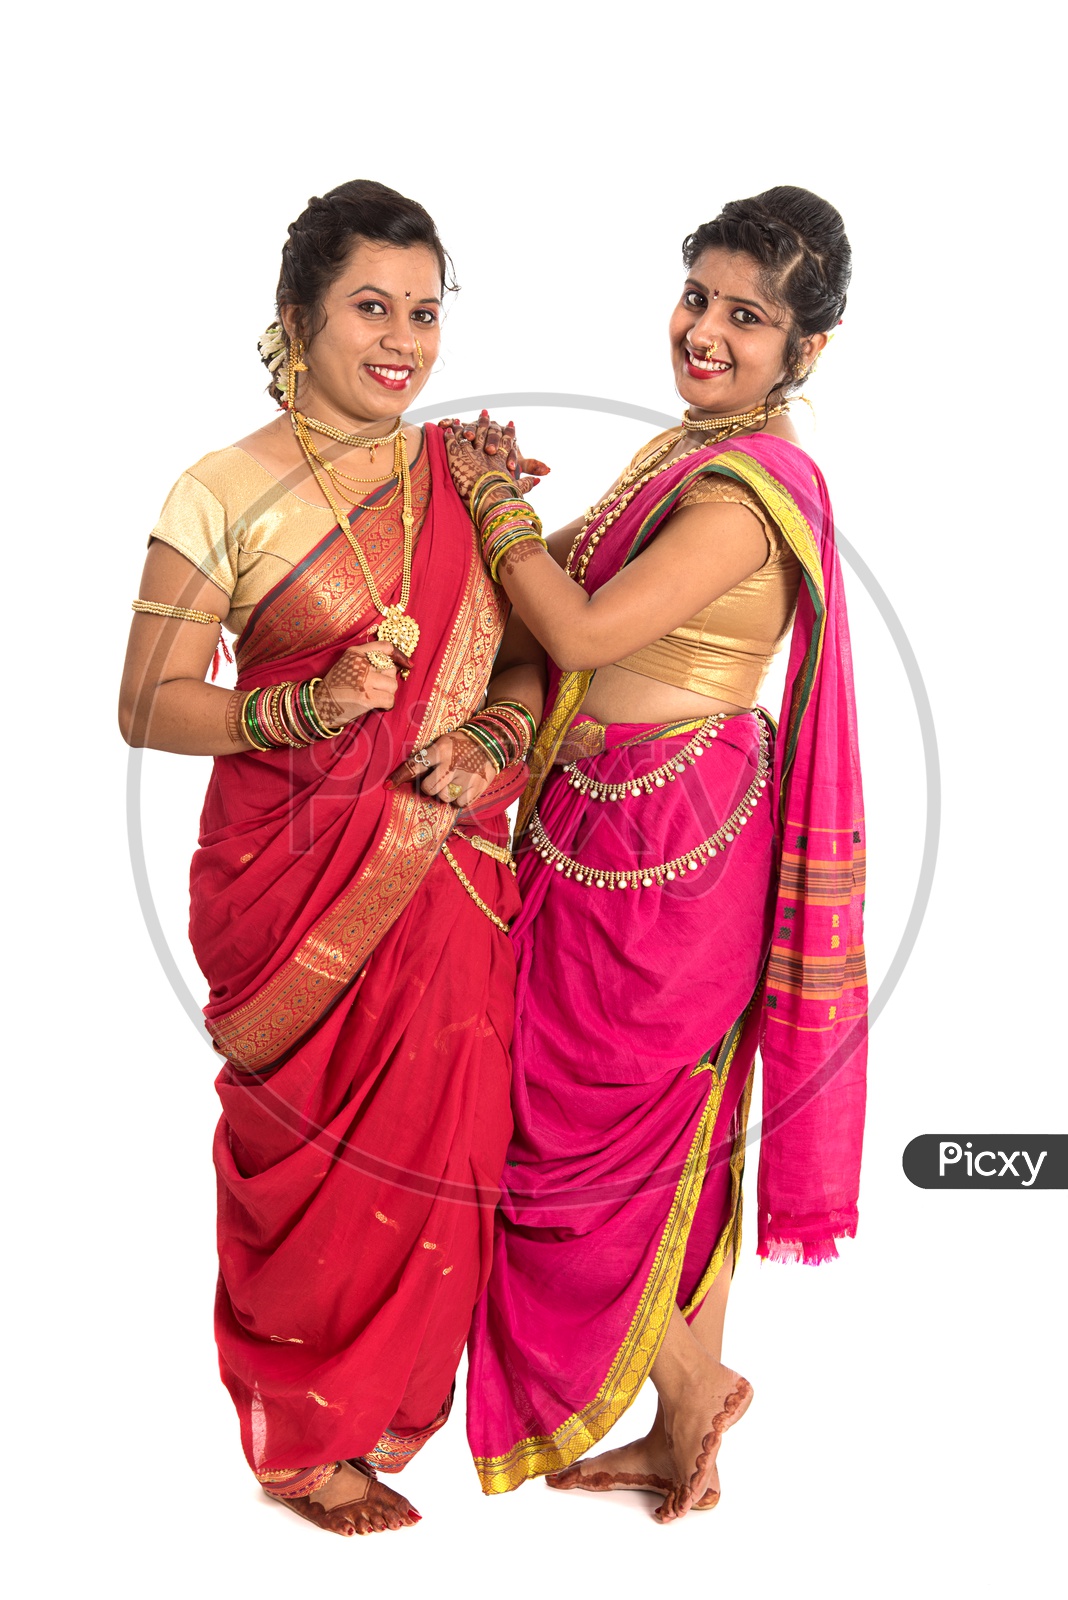 Maharashtra Saree: Over 2,913 Royalty-Free Licensable Stock Photos |  Shutterstock